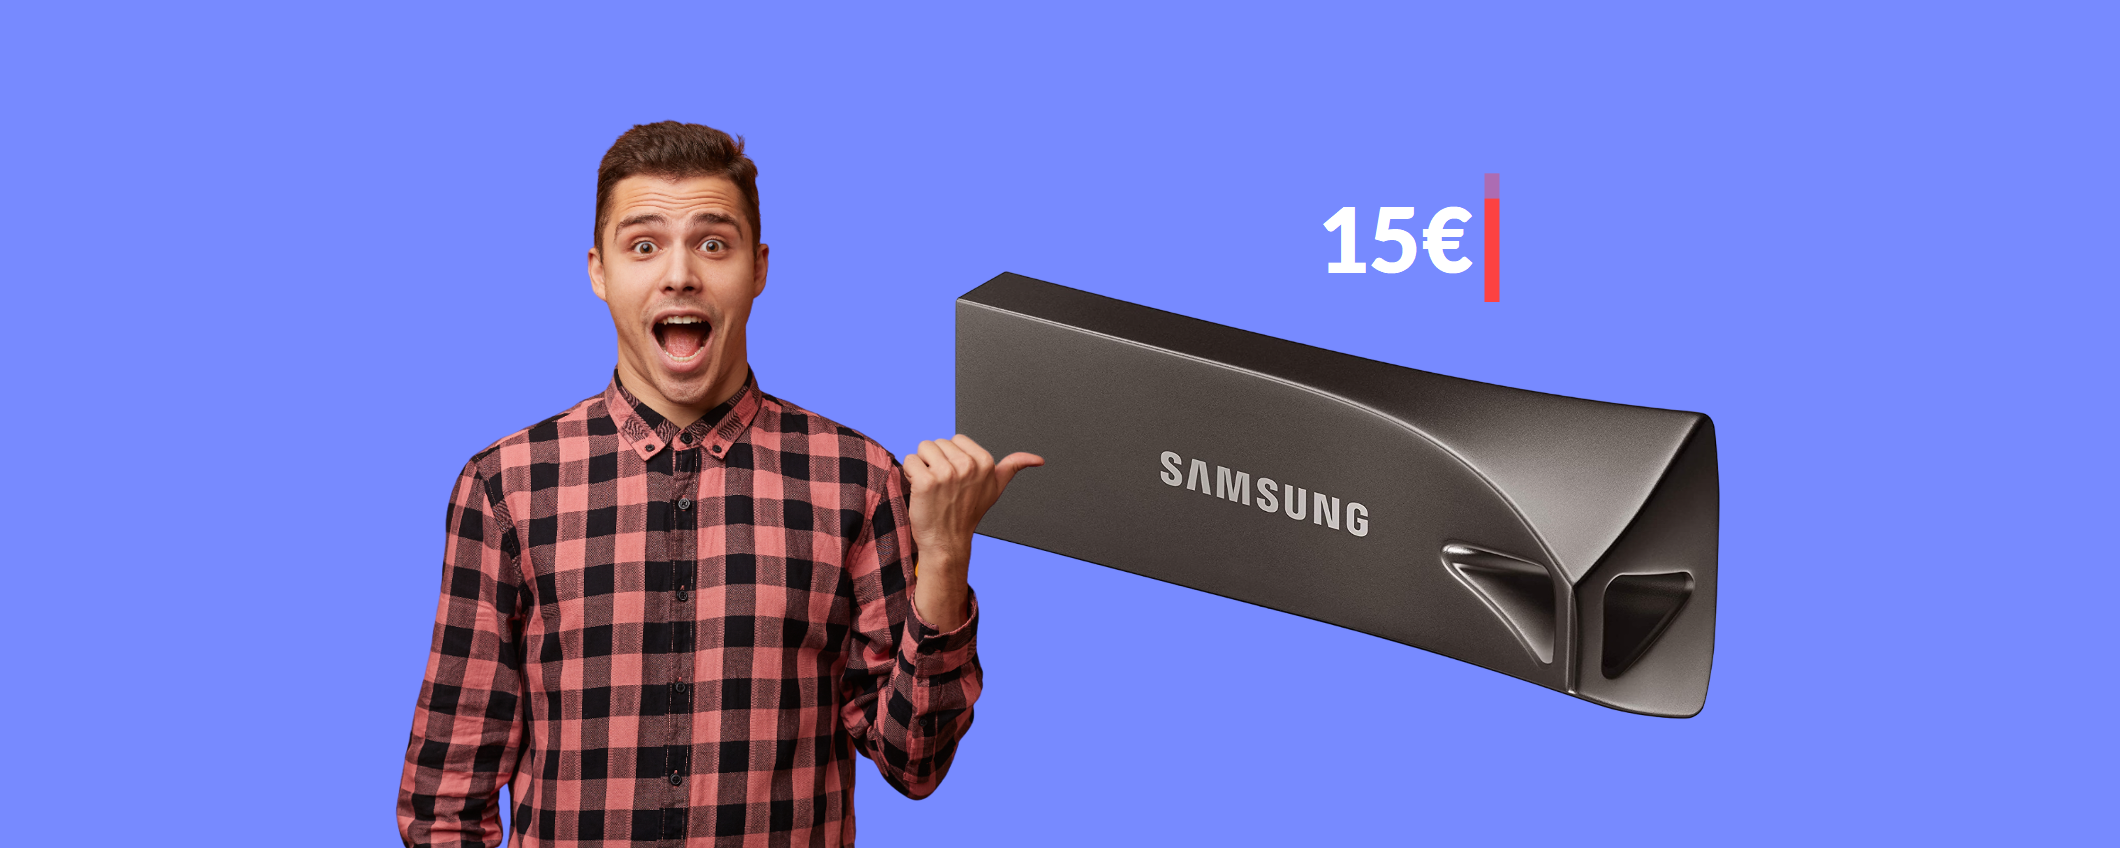 Chiavetta USB 32GB Samsung: è velocissima e costa solo 15€